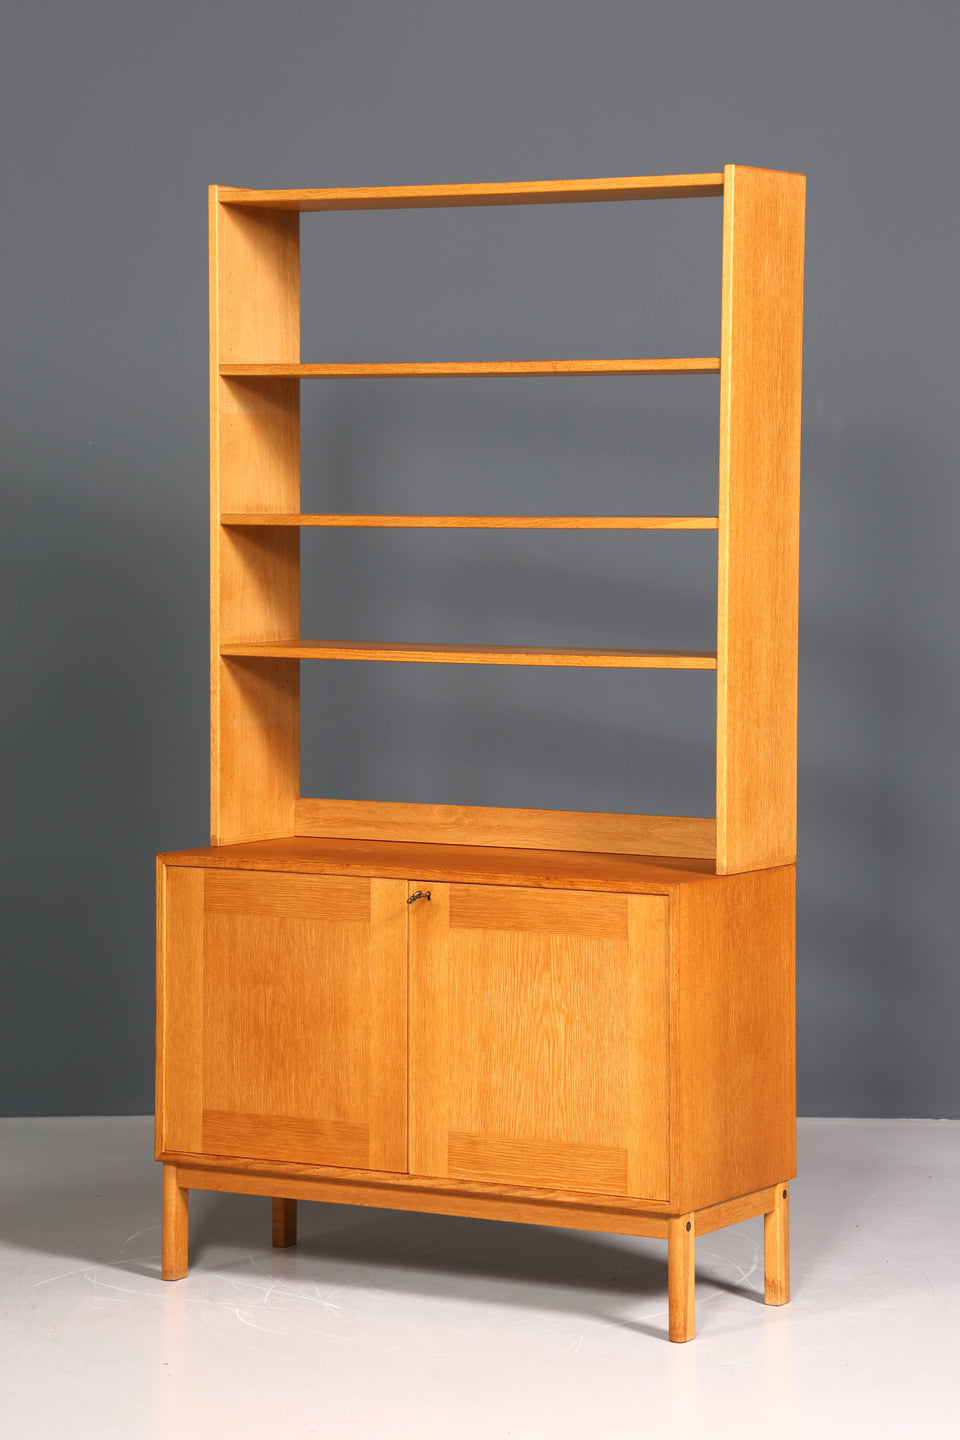 Wunderschöner Mid Century Regal Schrank Vintage Highboard Bücherregal Holz Kommode